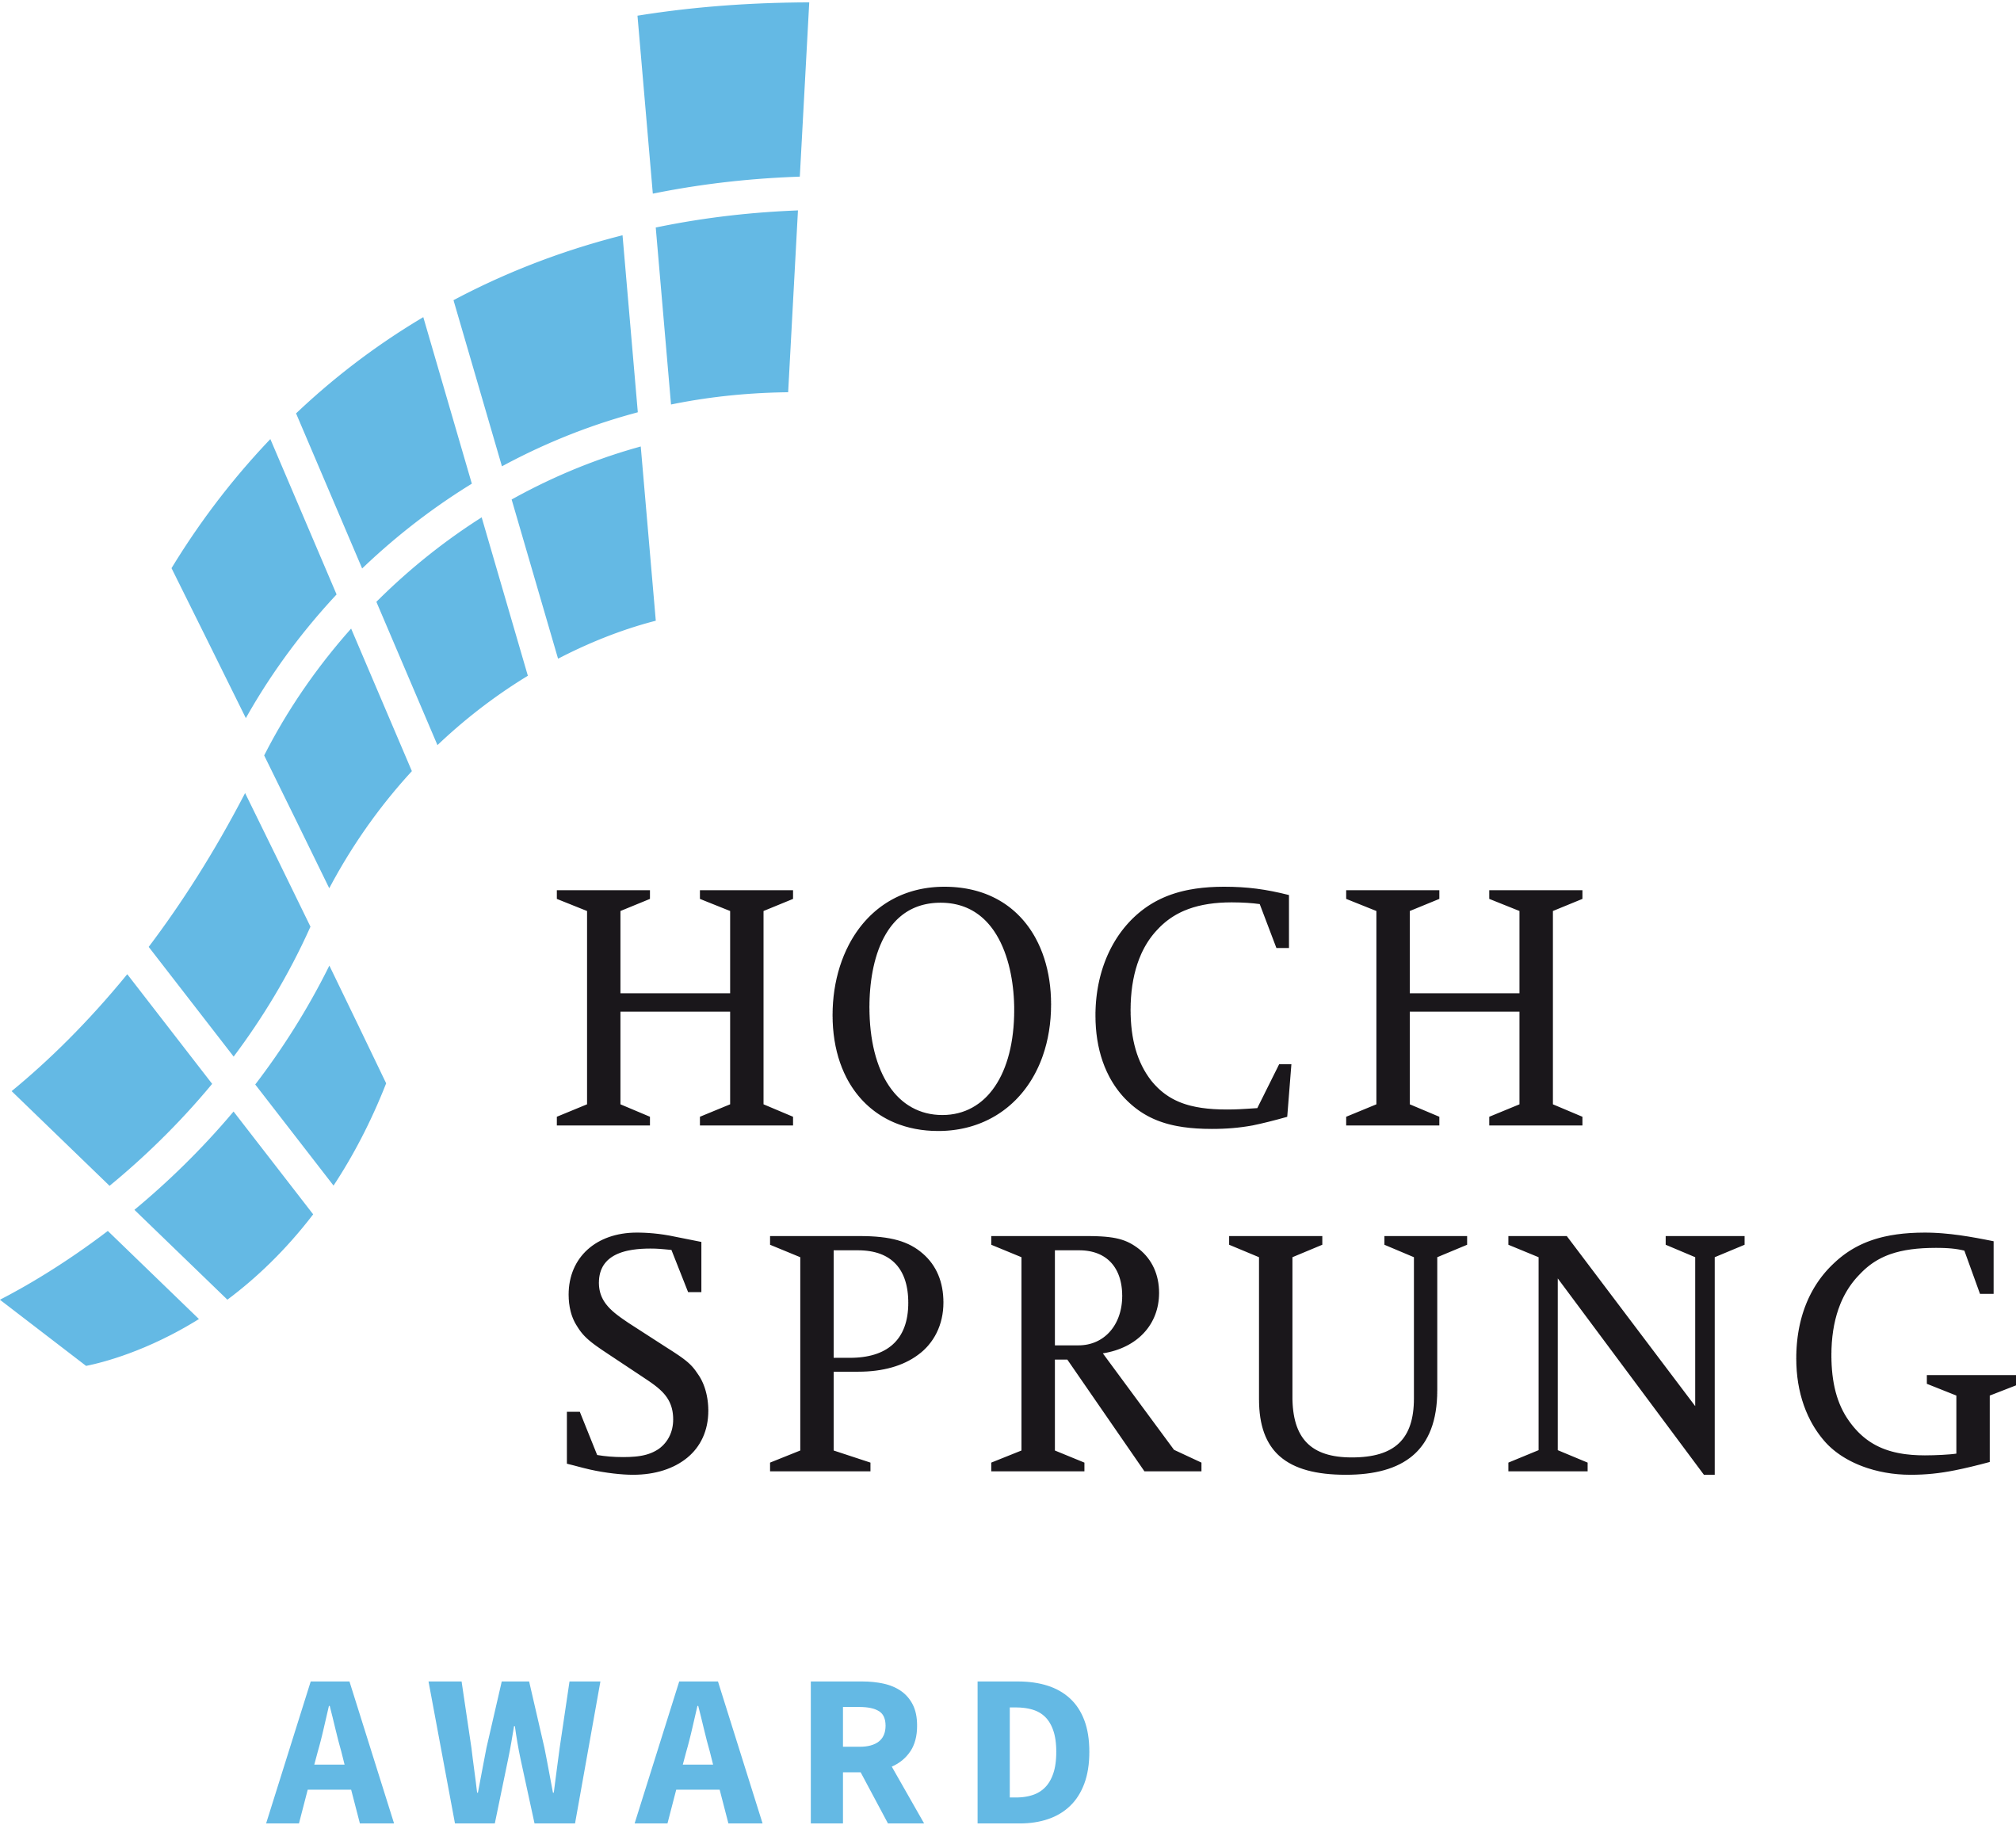 HOCHSPRUNG Award